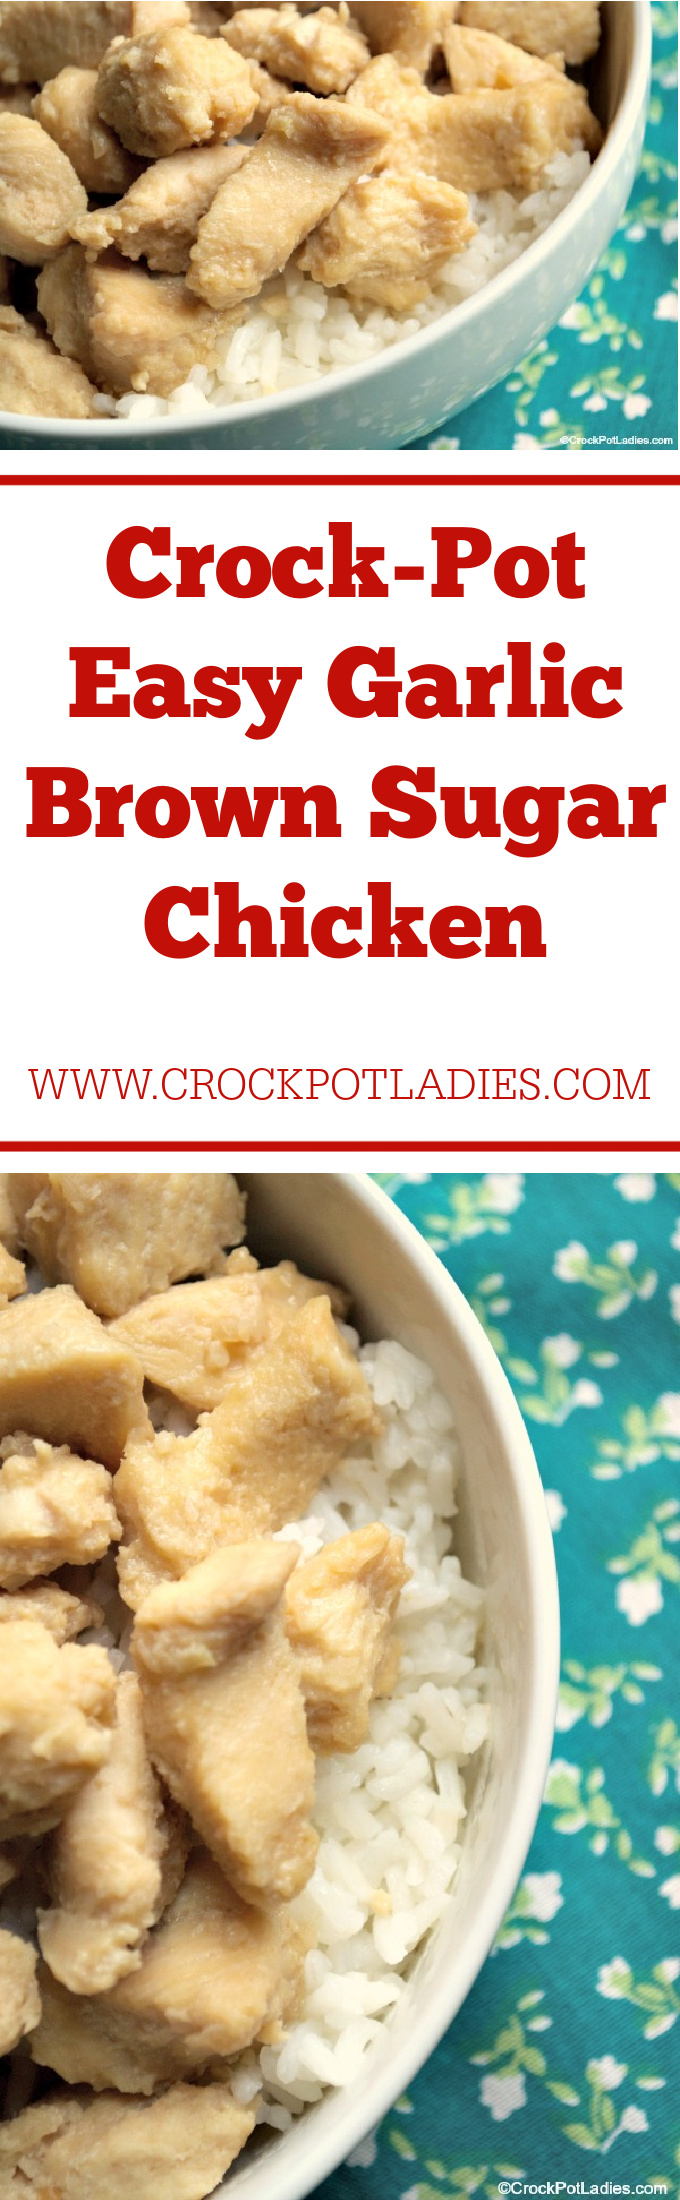 Crock-Pot Easy Garlic Brown Sugar Chicken